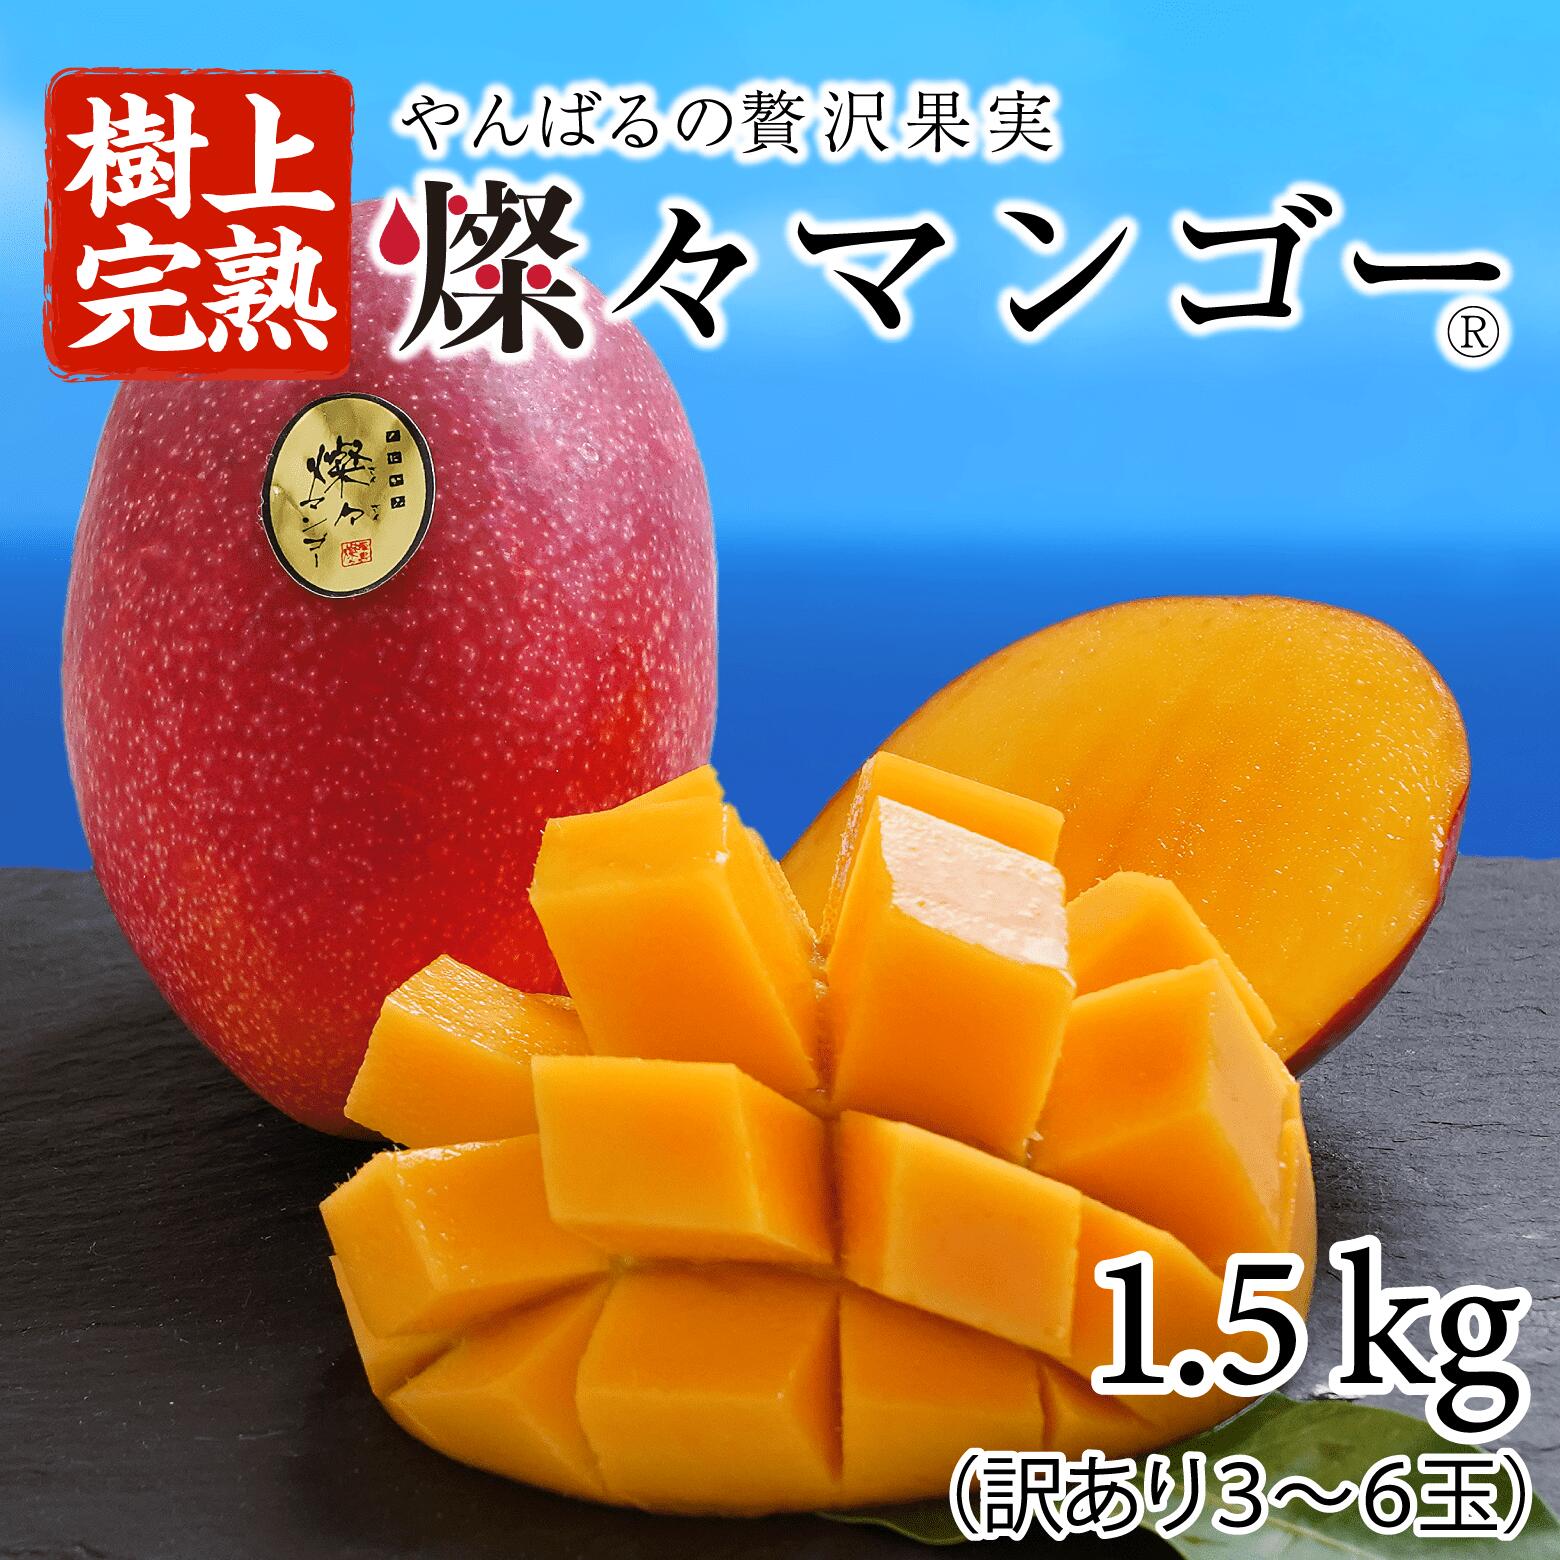 わけありマンゴー1:9キロ